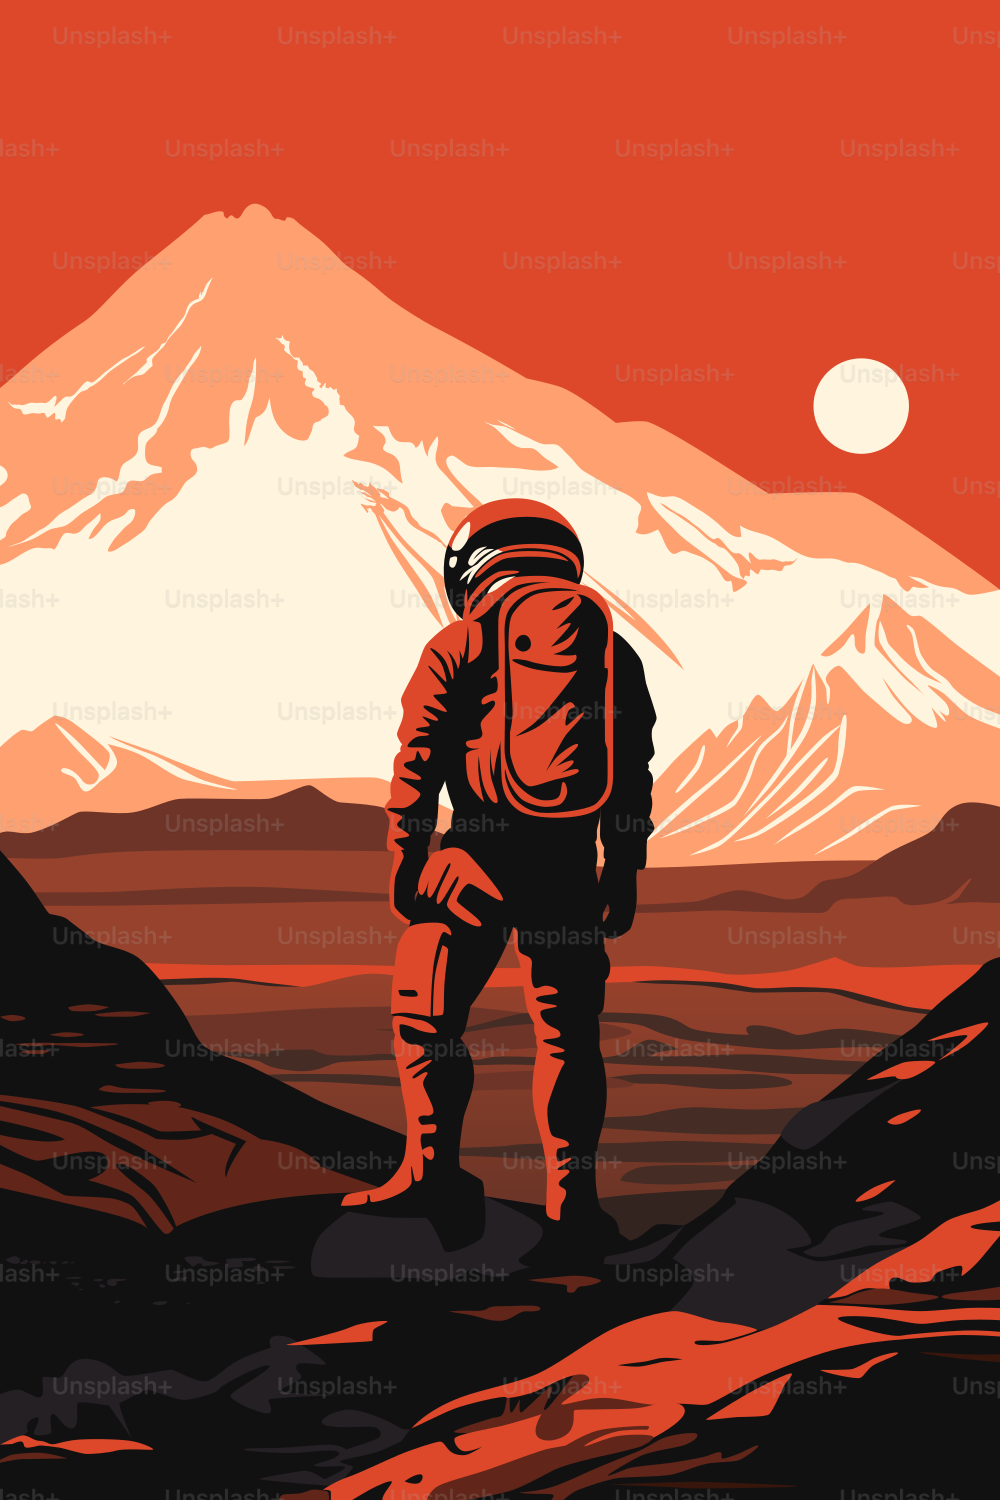 Mars-Kolonisations-Poster. Erforschung des menschlichen Sonnensystems. Astronaut auf der Oberfläche des Roten Planeten mit Blick auf seine Landschaft. Ferne Sonne am Himmel.